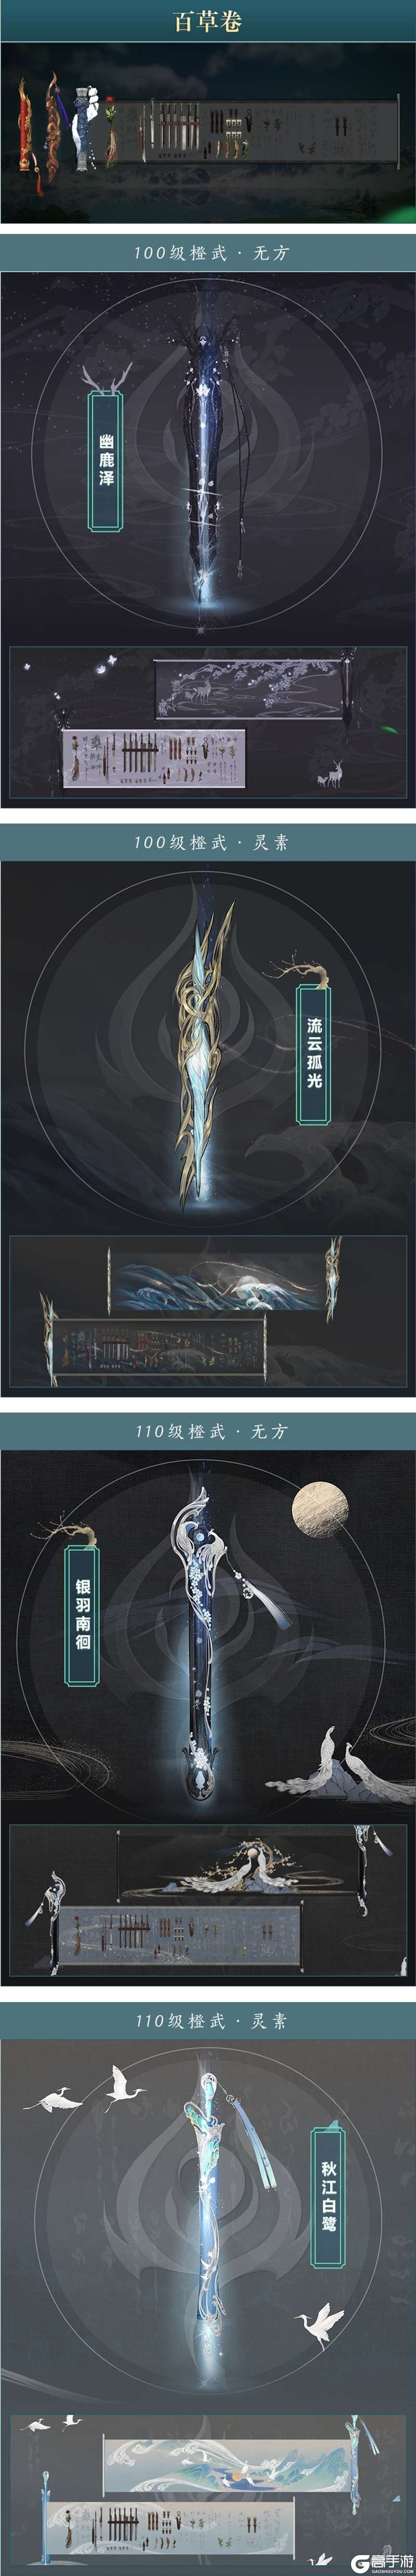 年度资料片“北天药宗”公布  《剑网3》十二周年发布会回顾